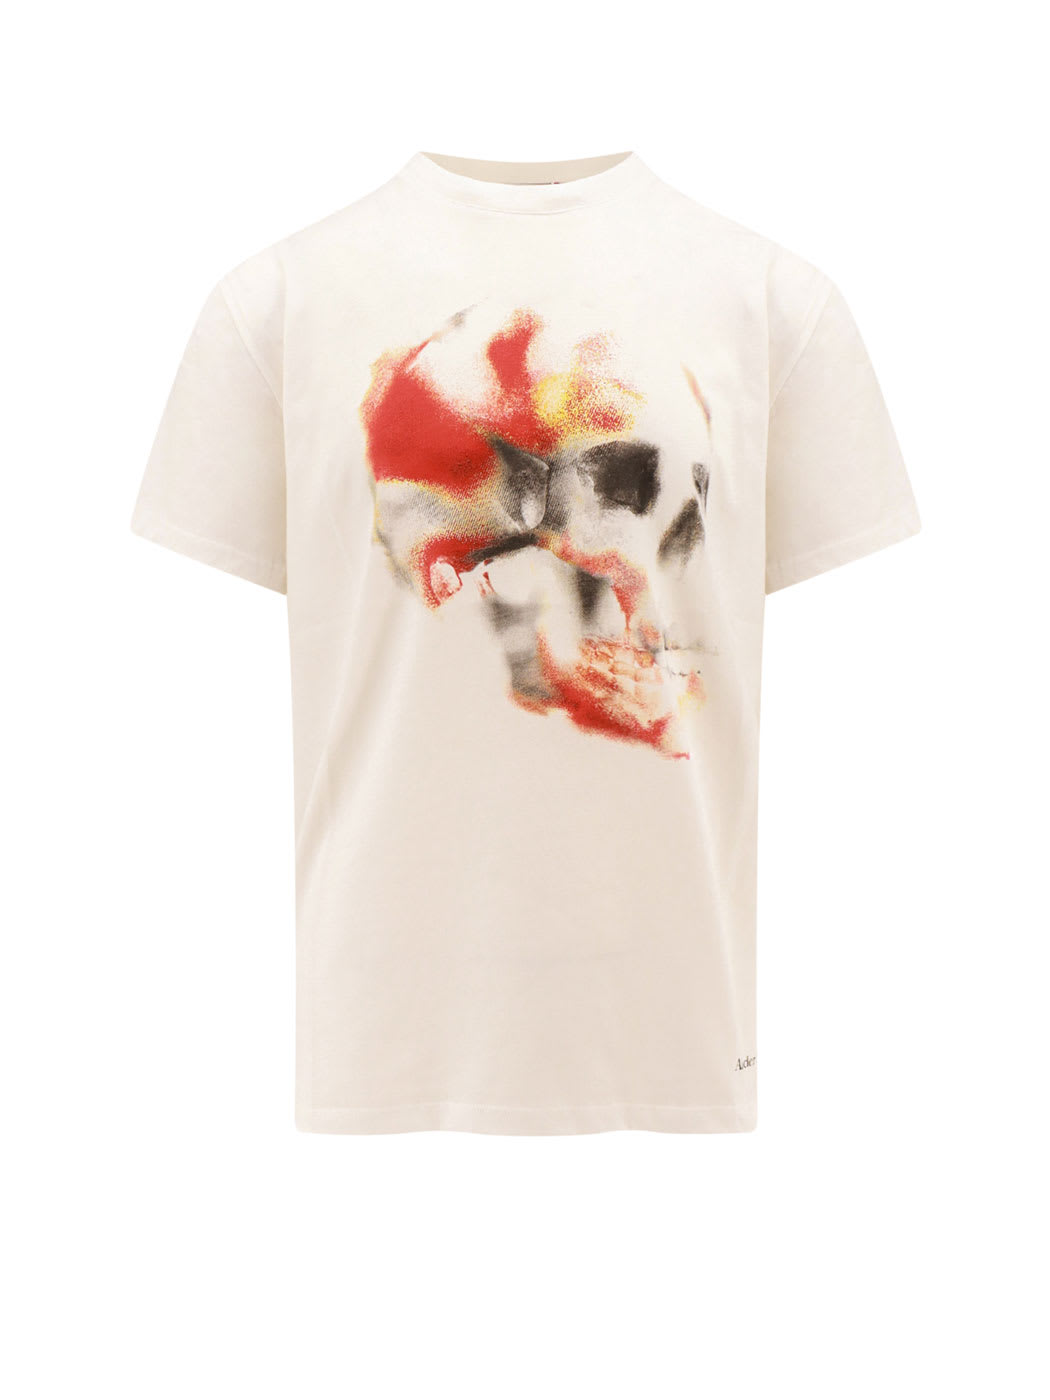 Shop Alexander Mcqueen T-shirt In White/red/black